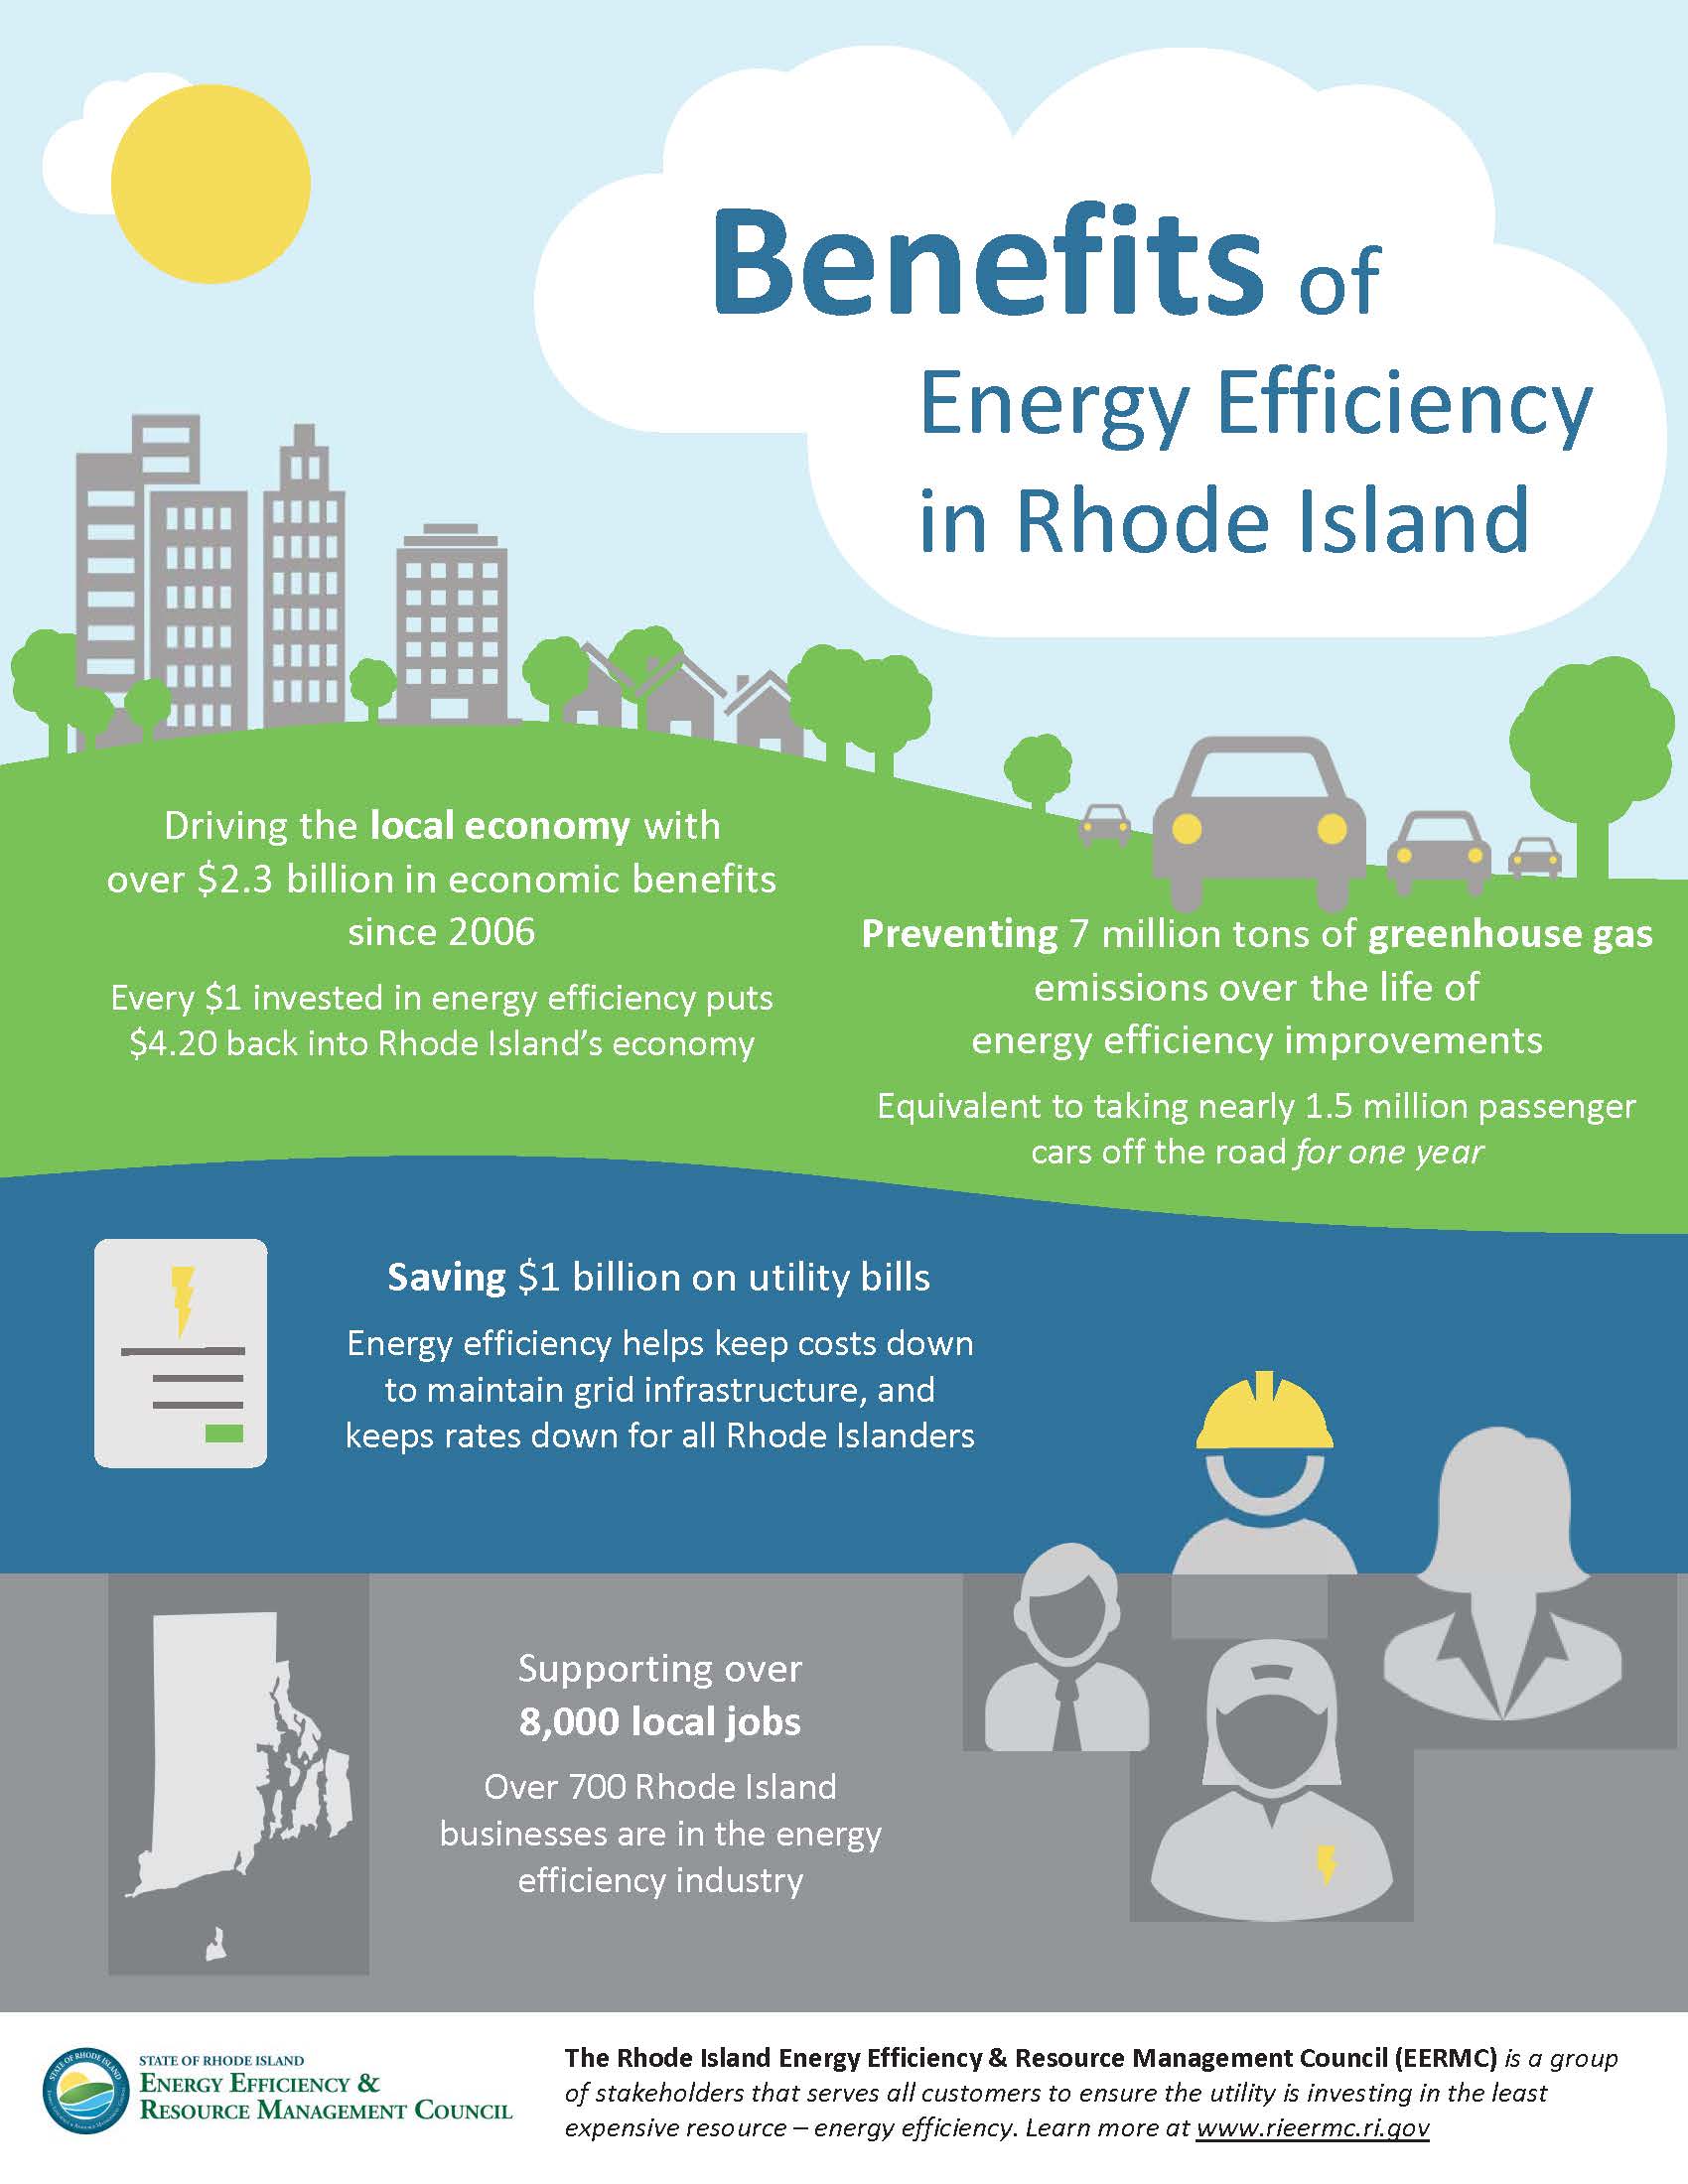 Rhode Island Energy Efficiency Rebate Program